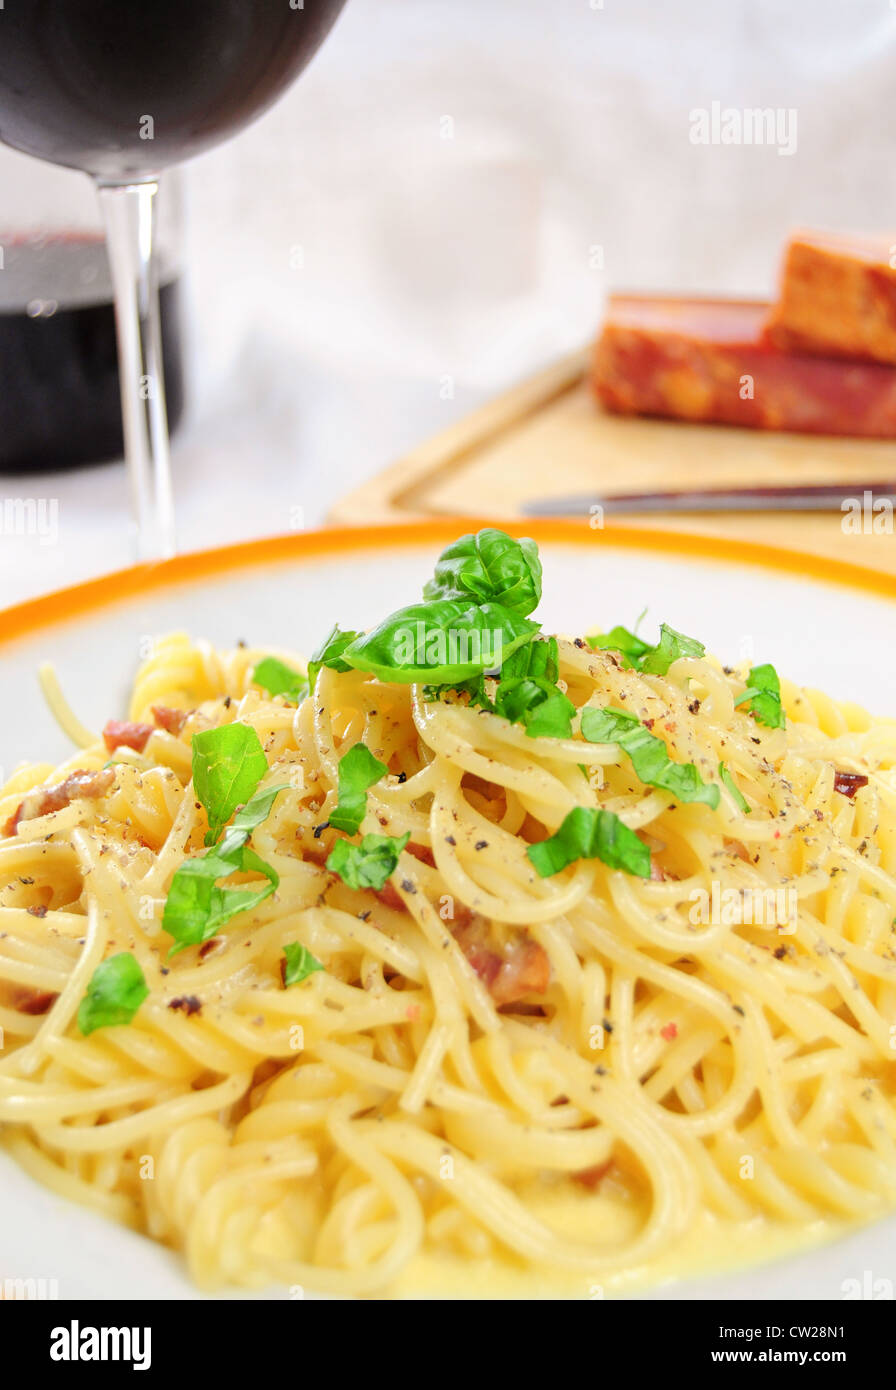 Vue rapprochée de Spaghetti carbonara sur table Banque D'Images